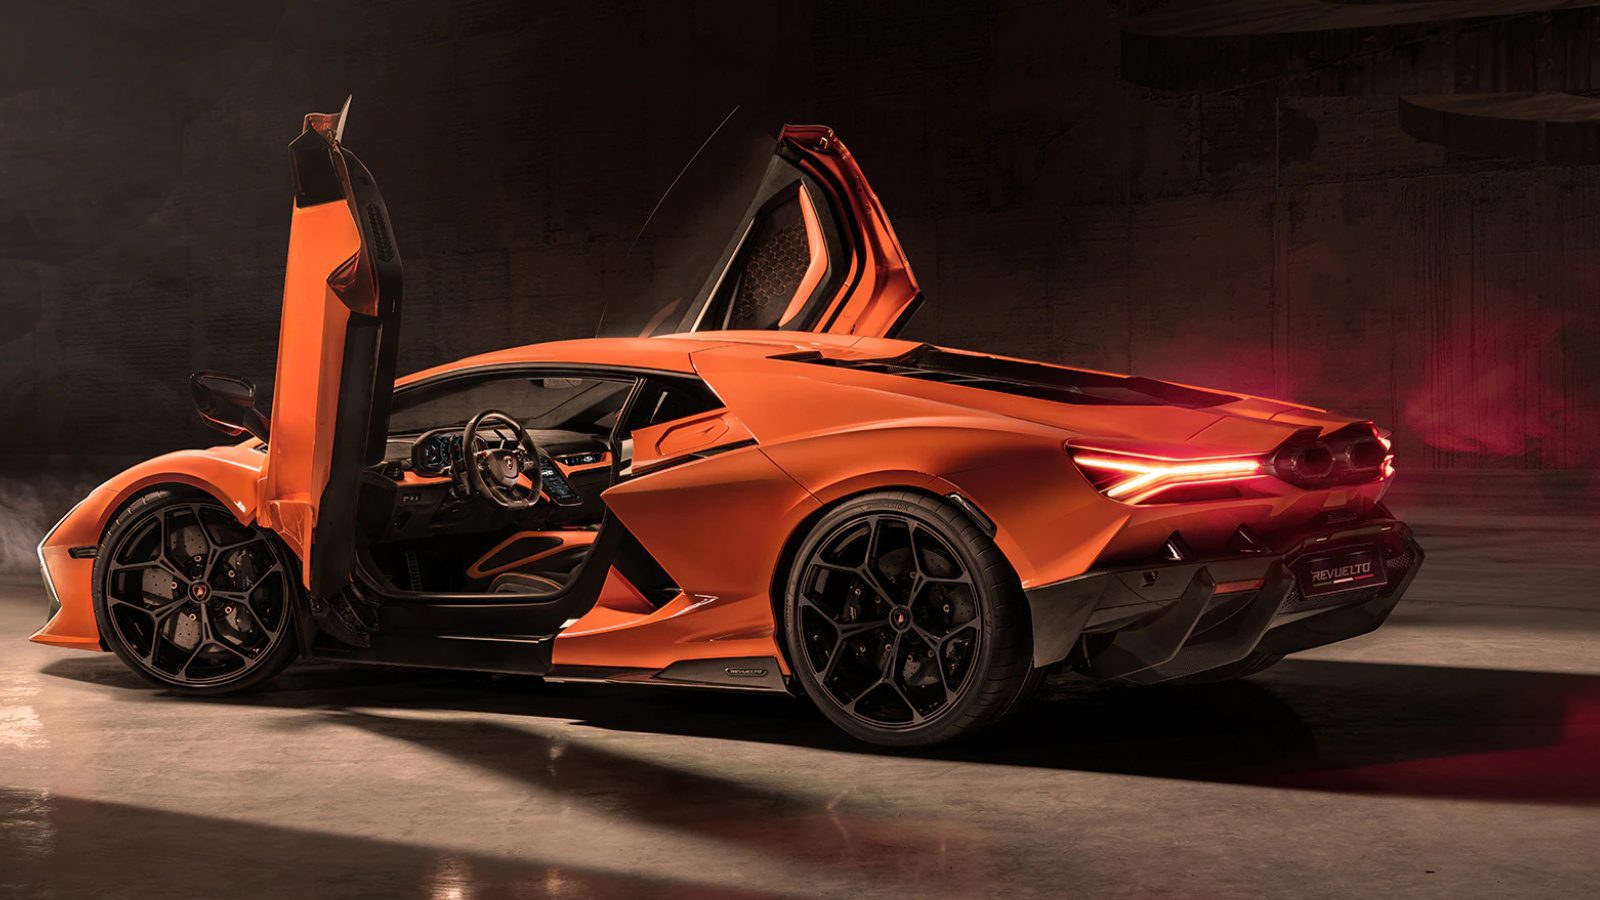 Lamborghini распродала все свои модели с двигателями внутреннего сгорания, чтобы перейти на полностью гибридный вариант